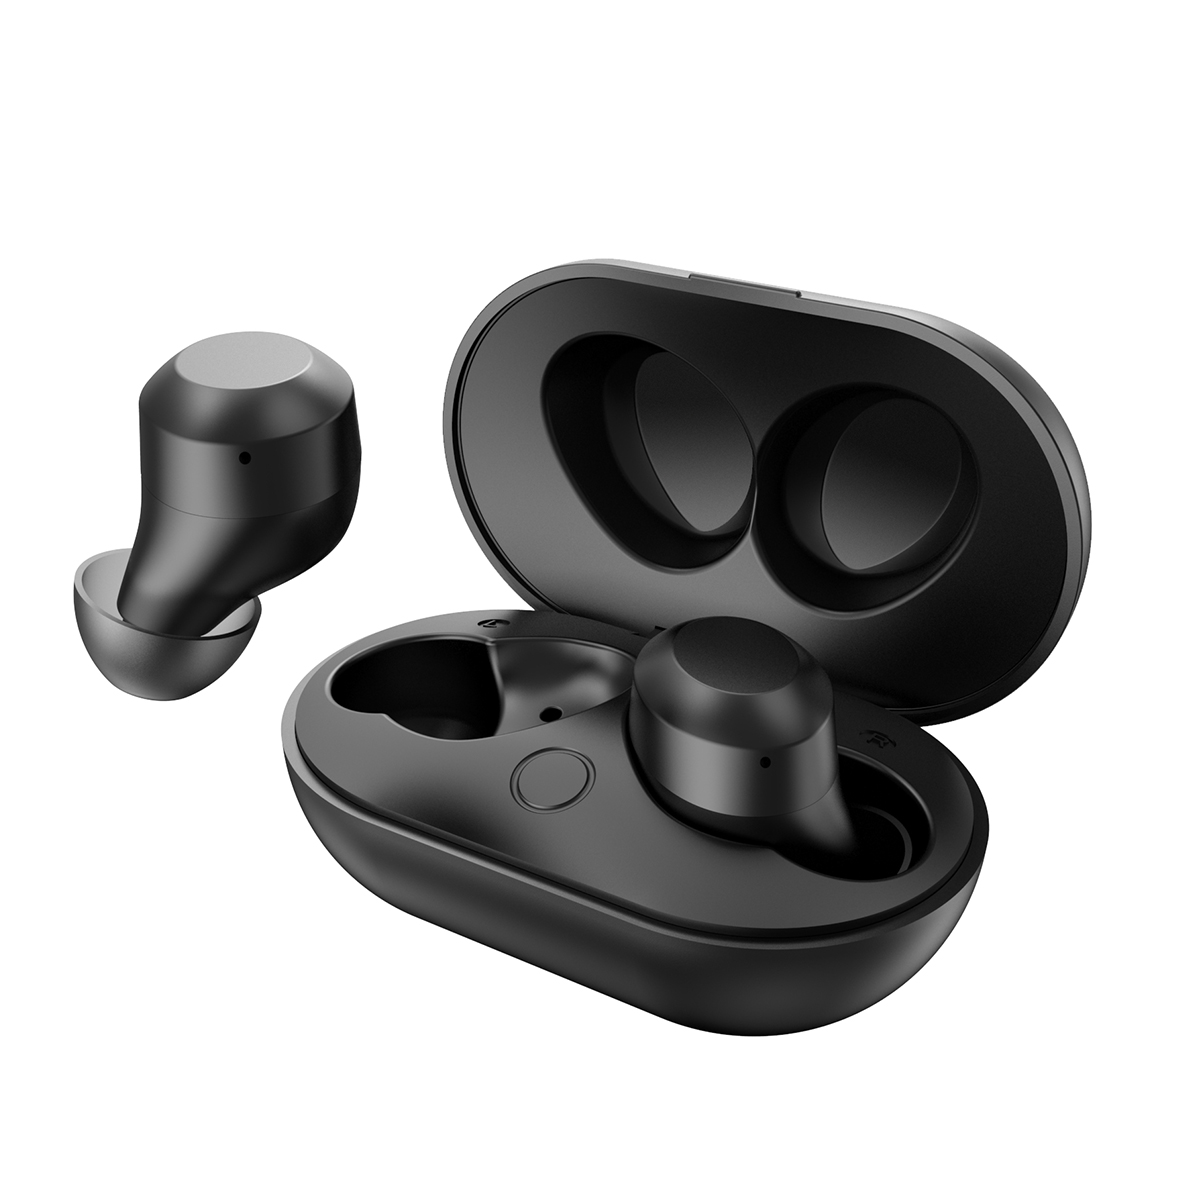 S8 wireless earbuds